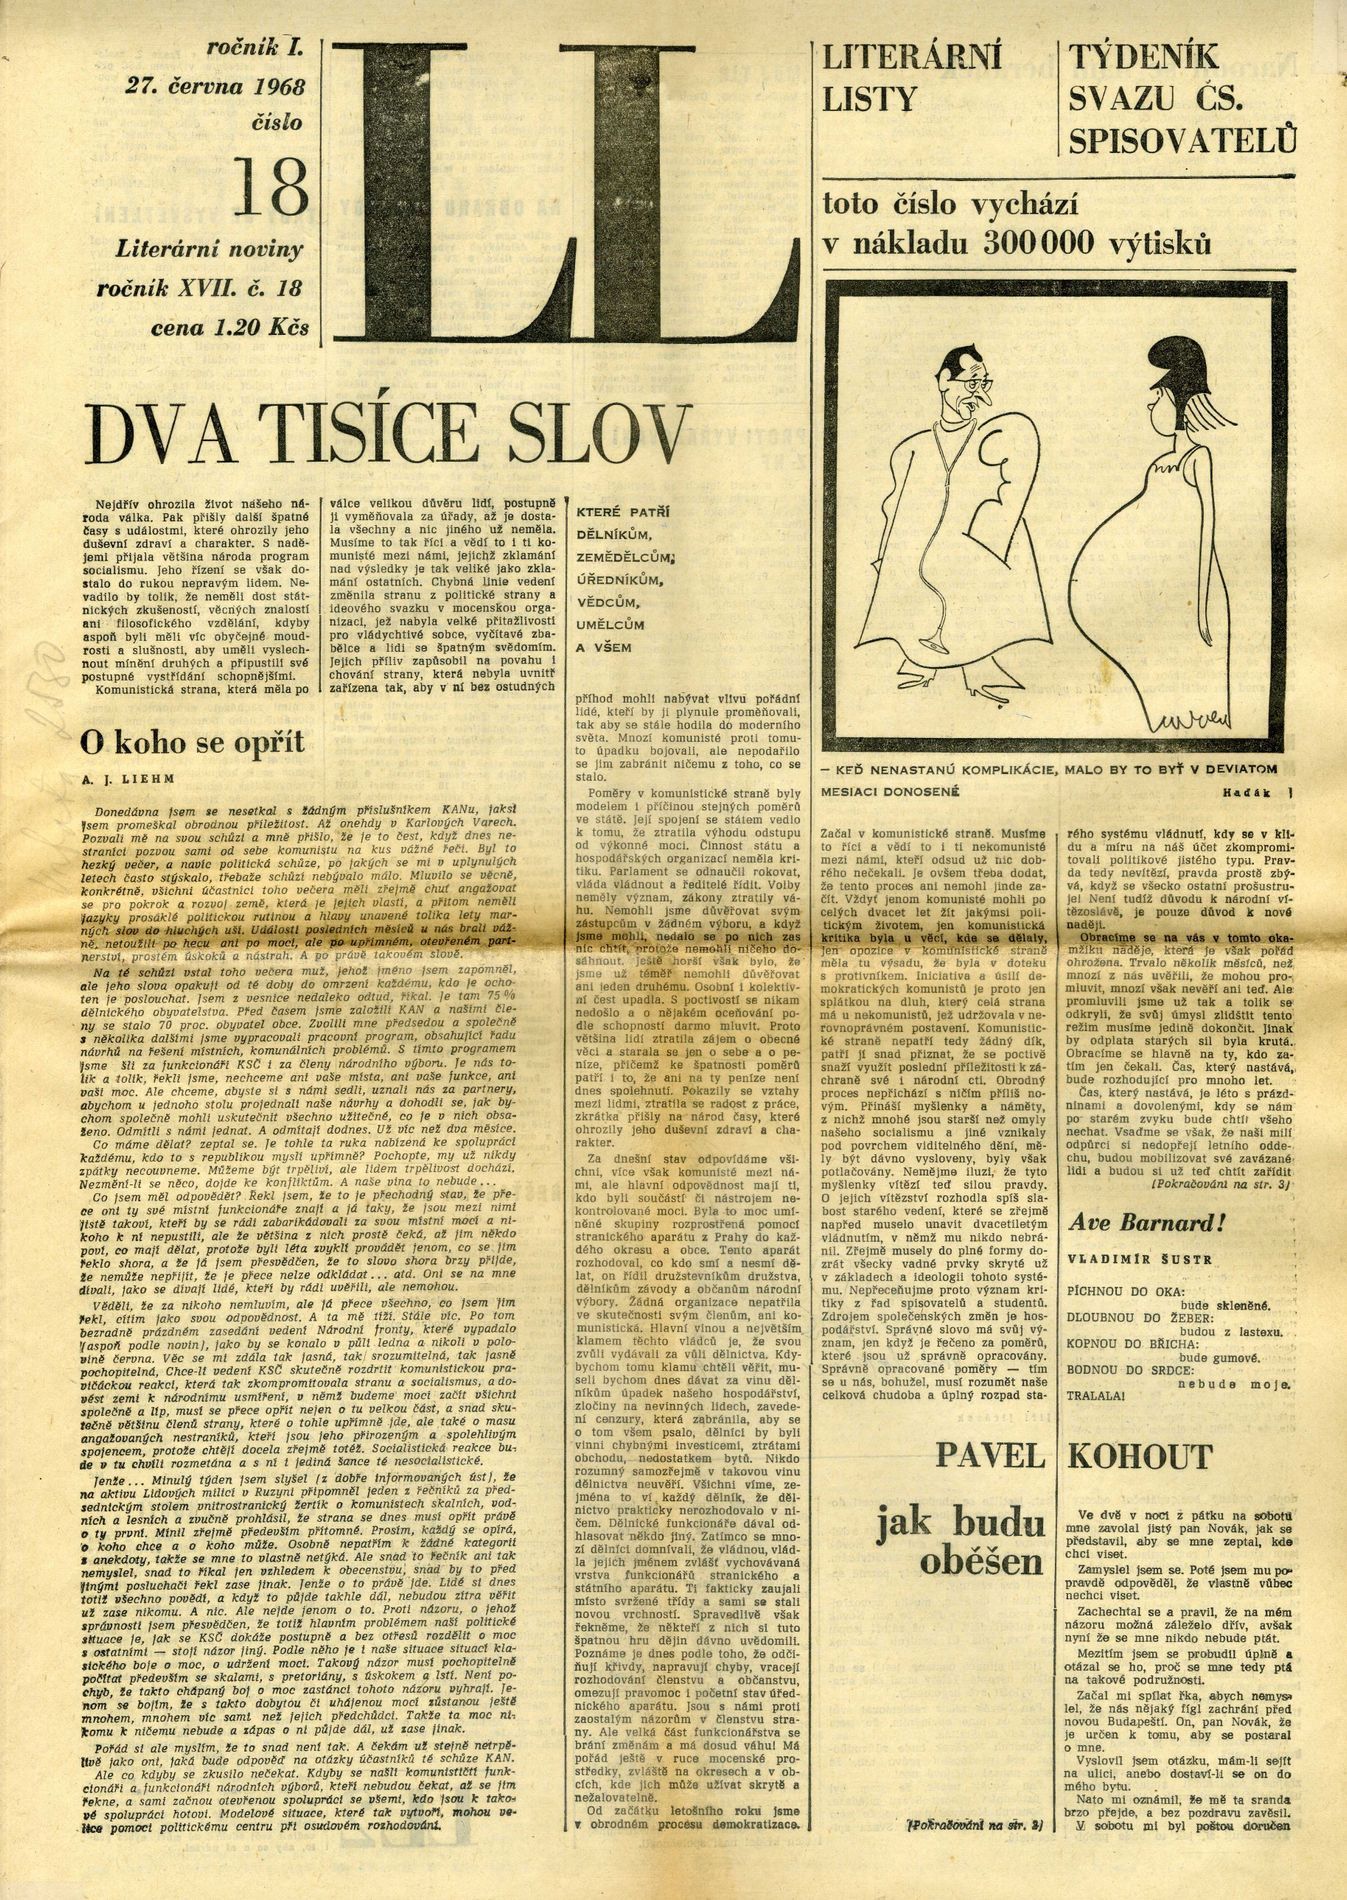 Pražské jaro 1968 literární noviny dva tisíce slov